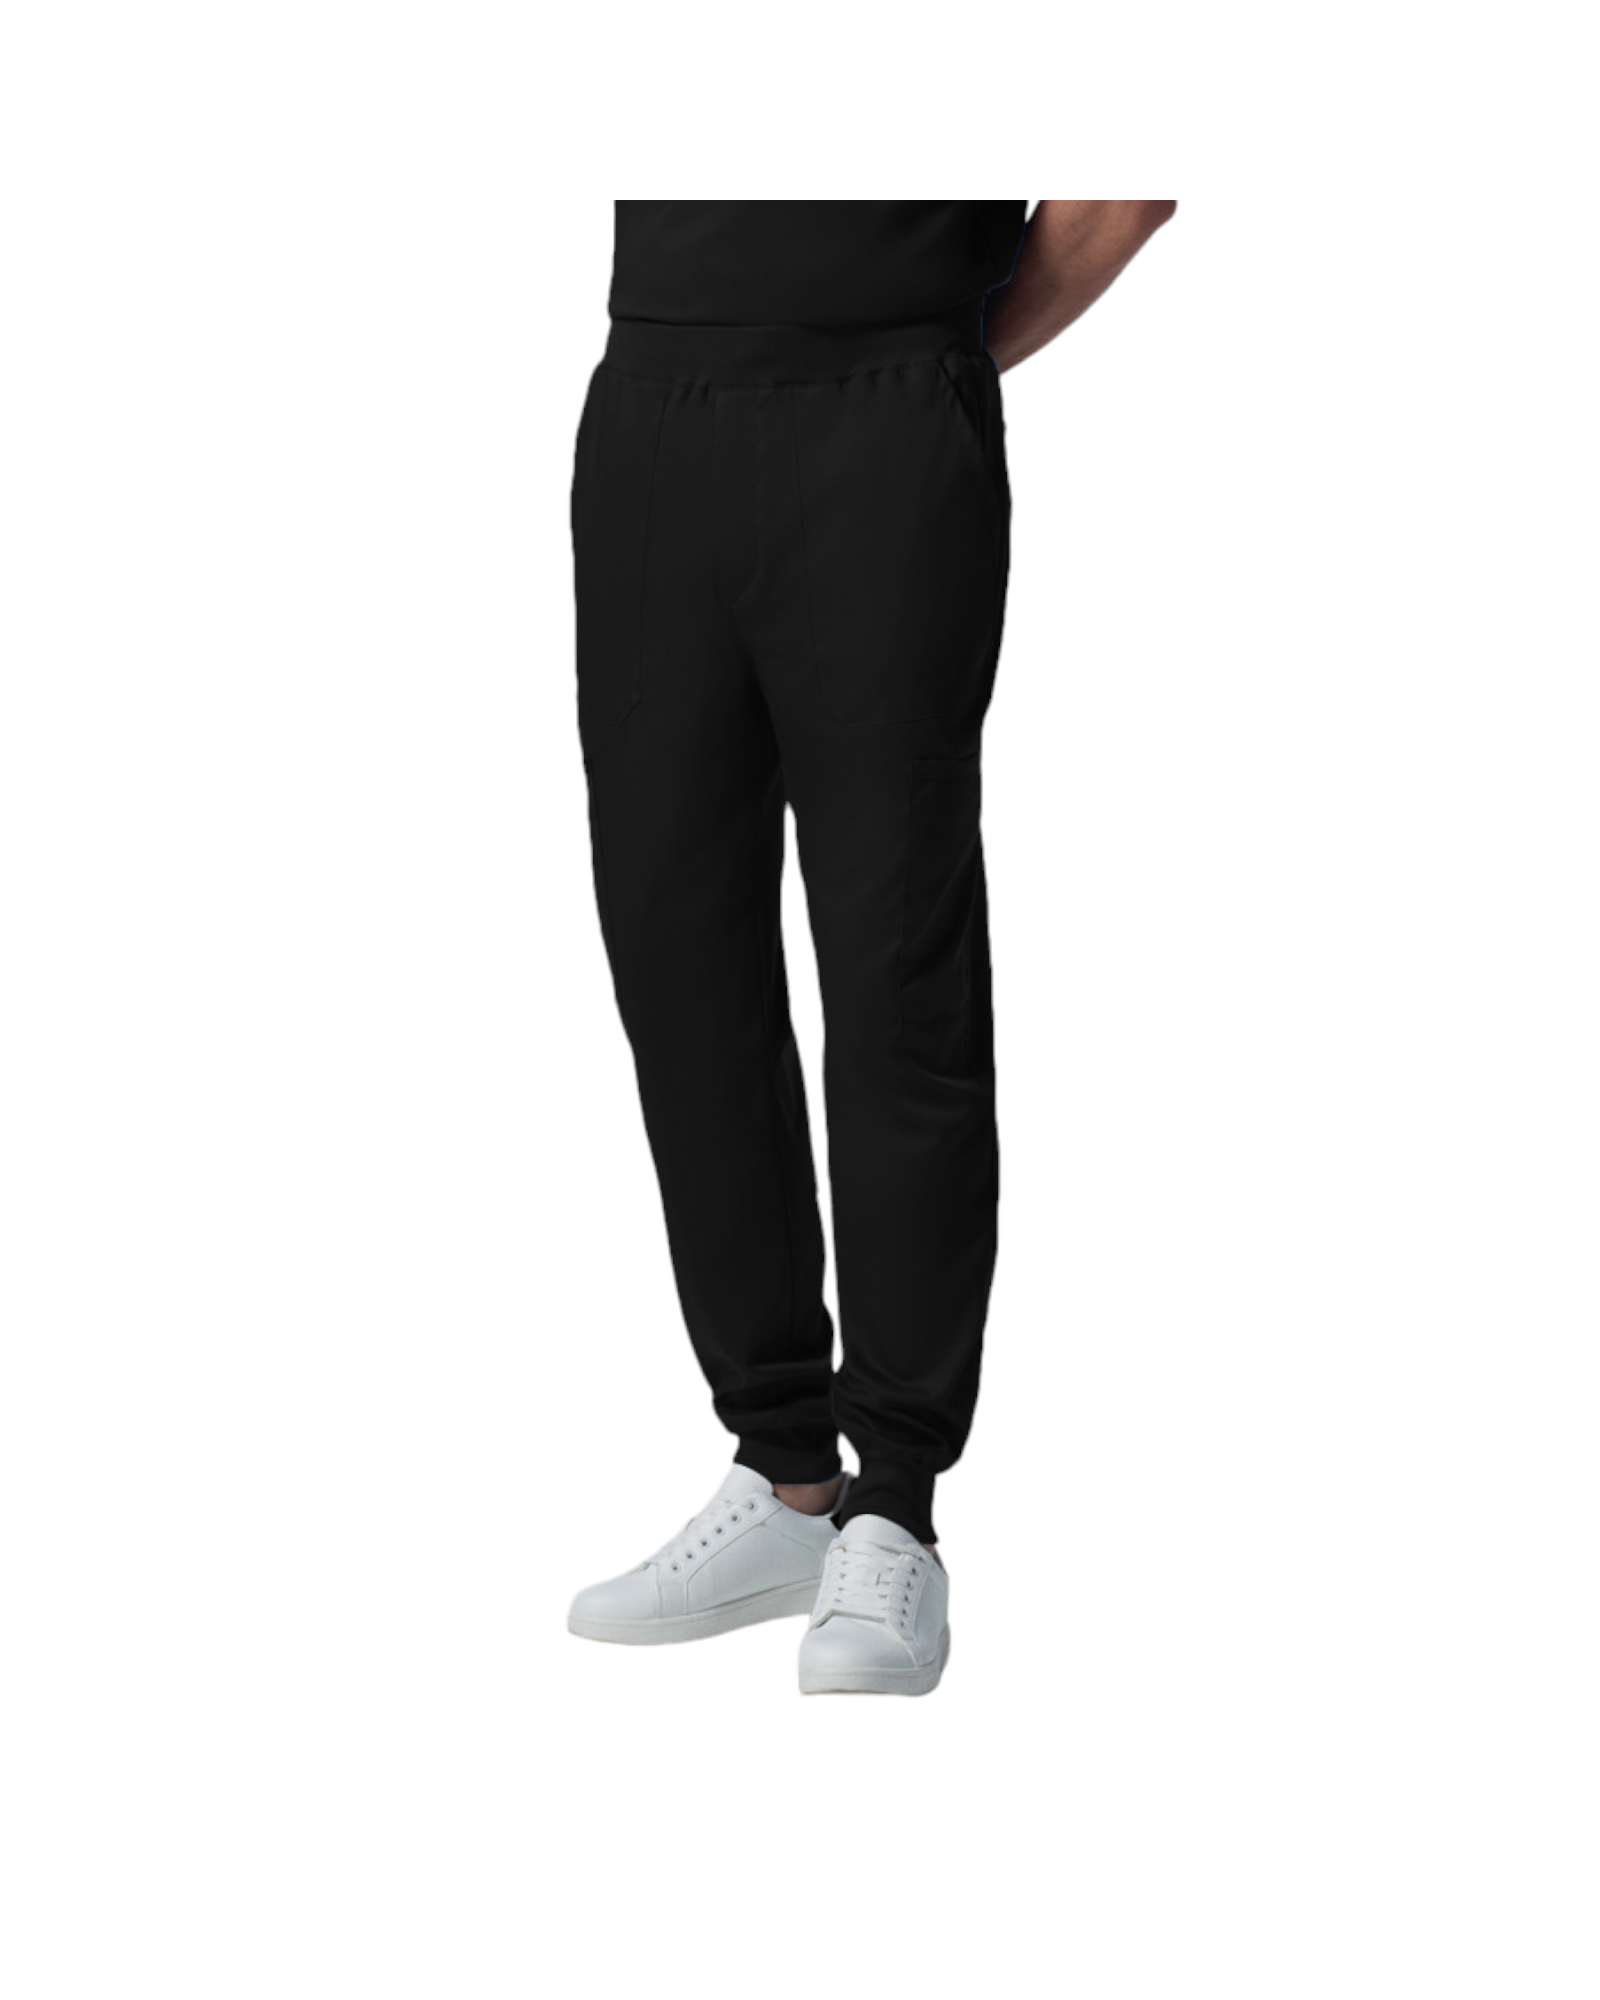 Pantalon jogger pour hommes Landau Proflex #LB407 OS couleur Noir